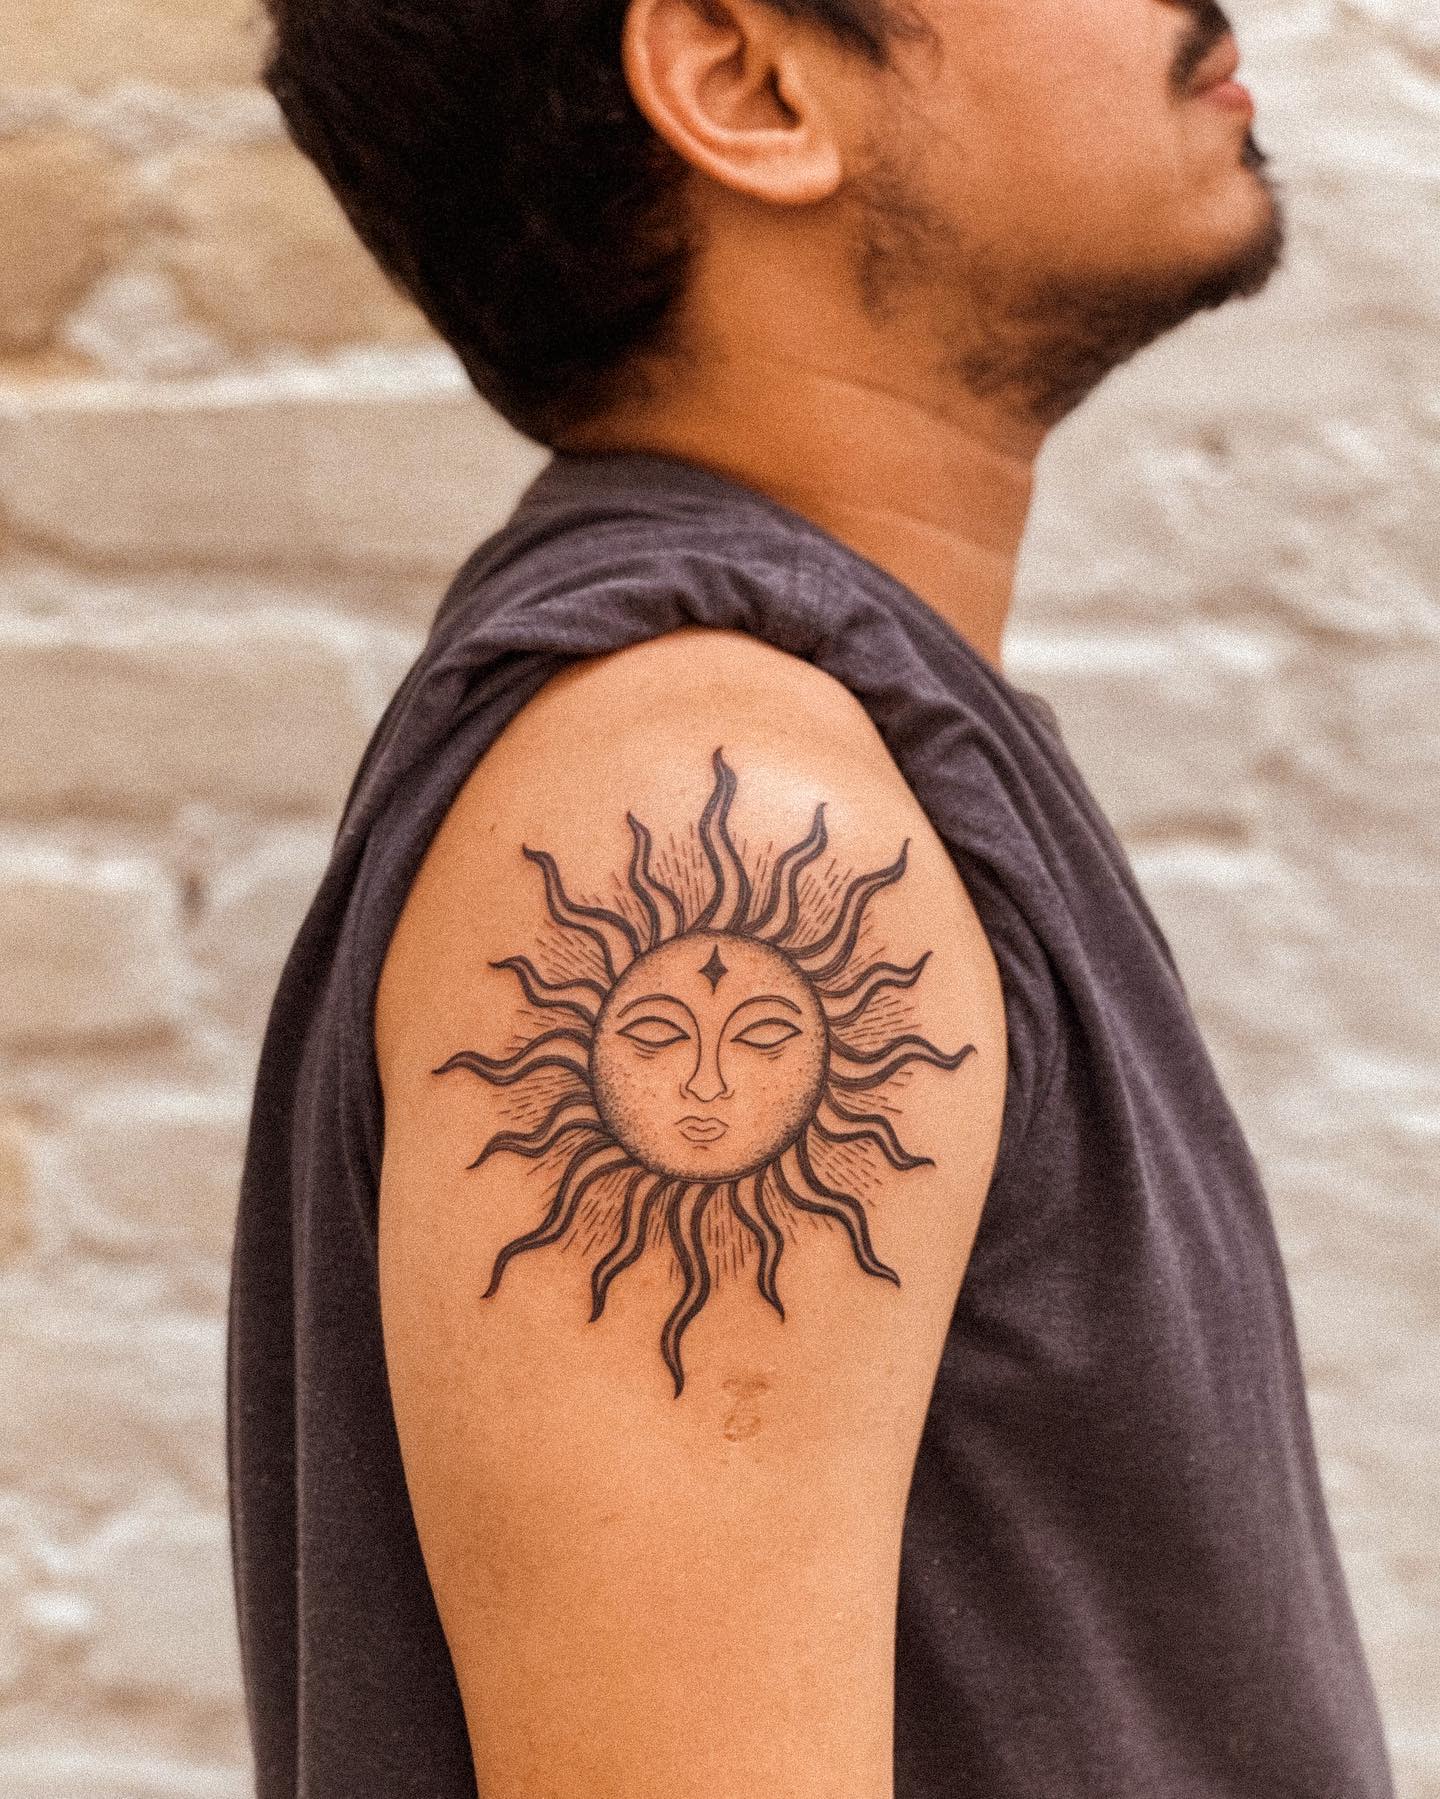 Tatuaje gigante de sol en los hombros